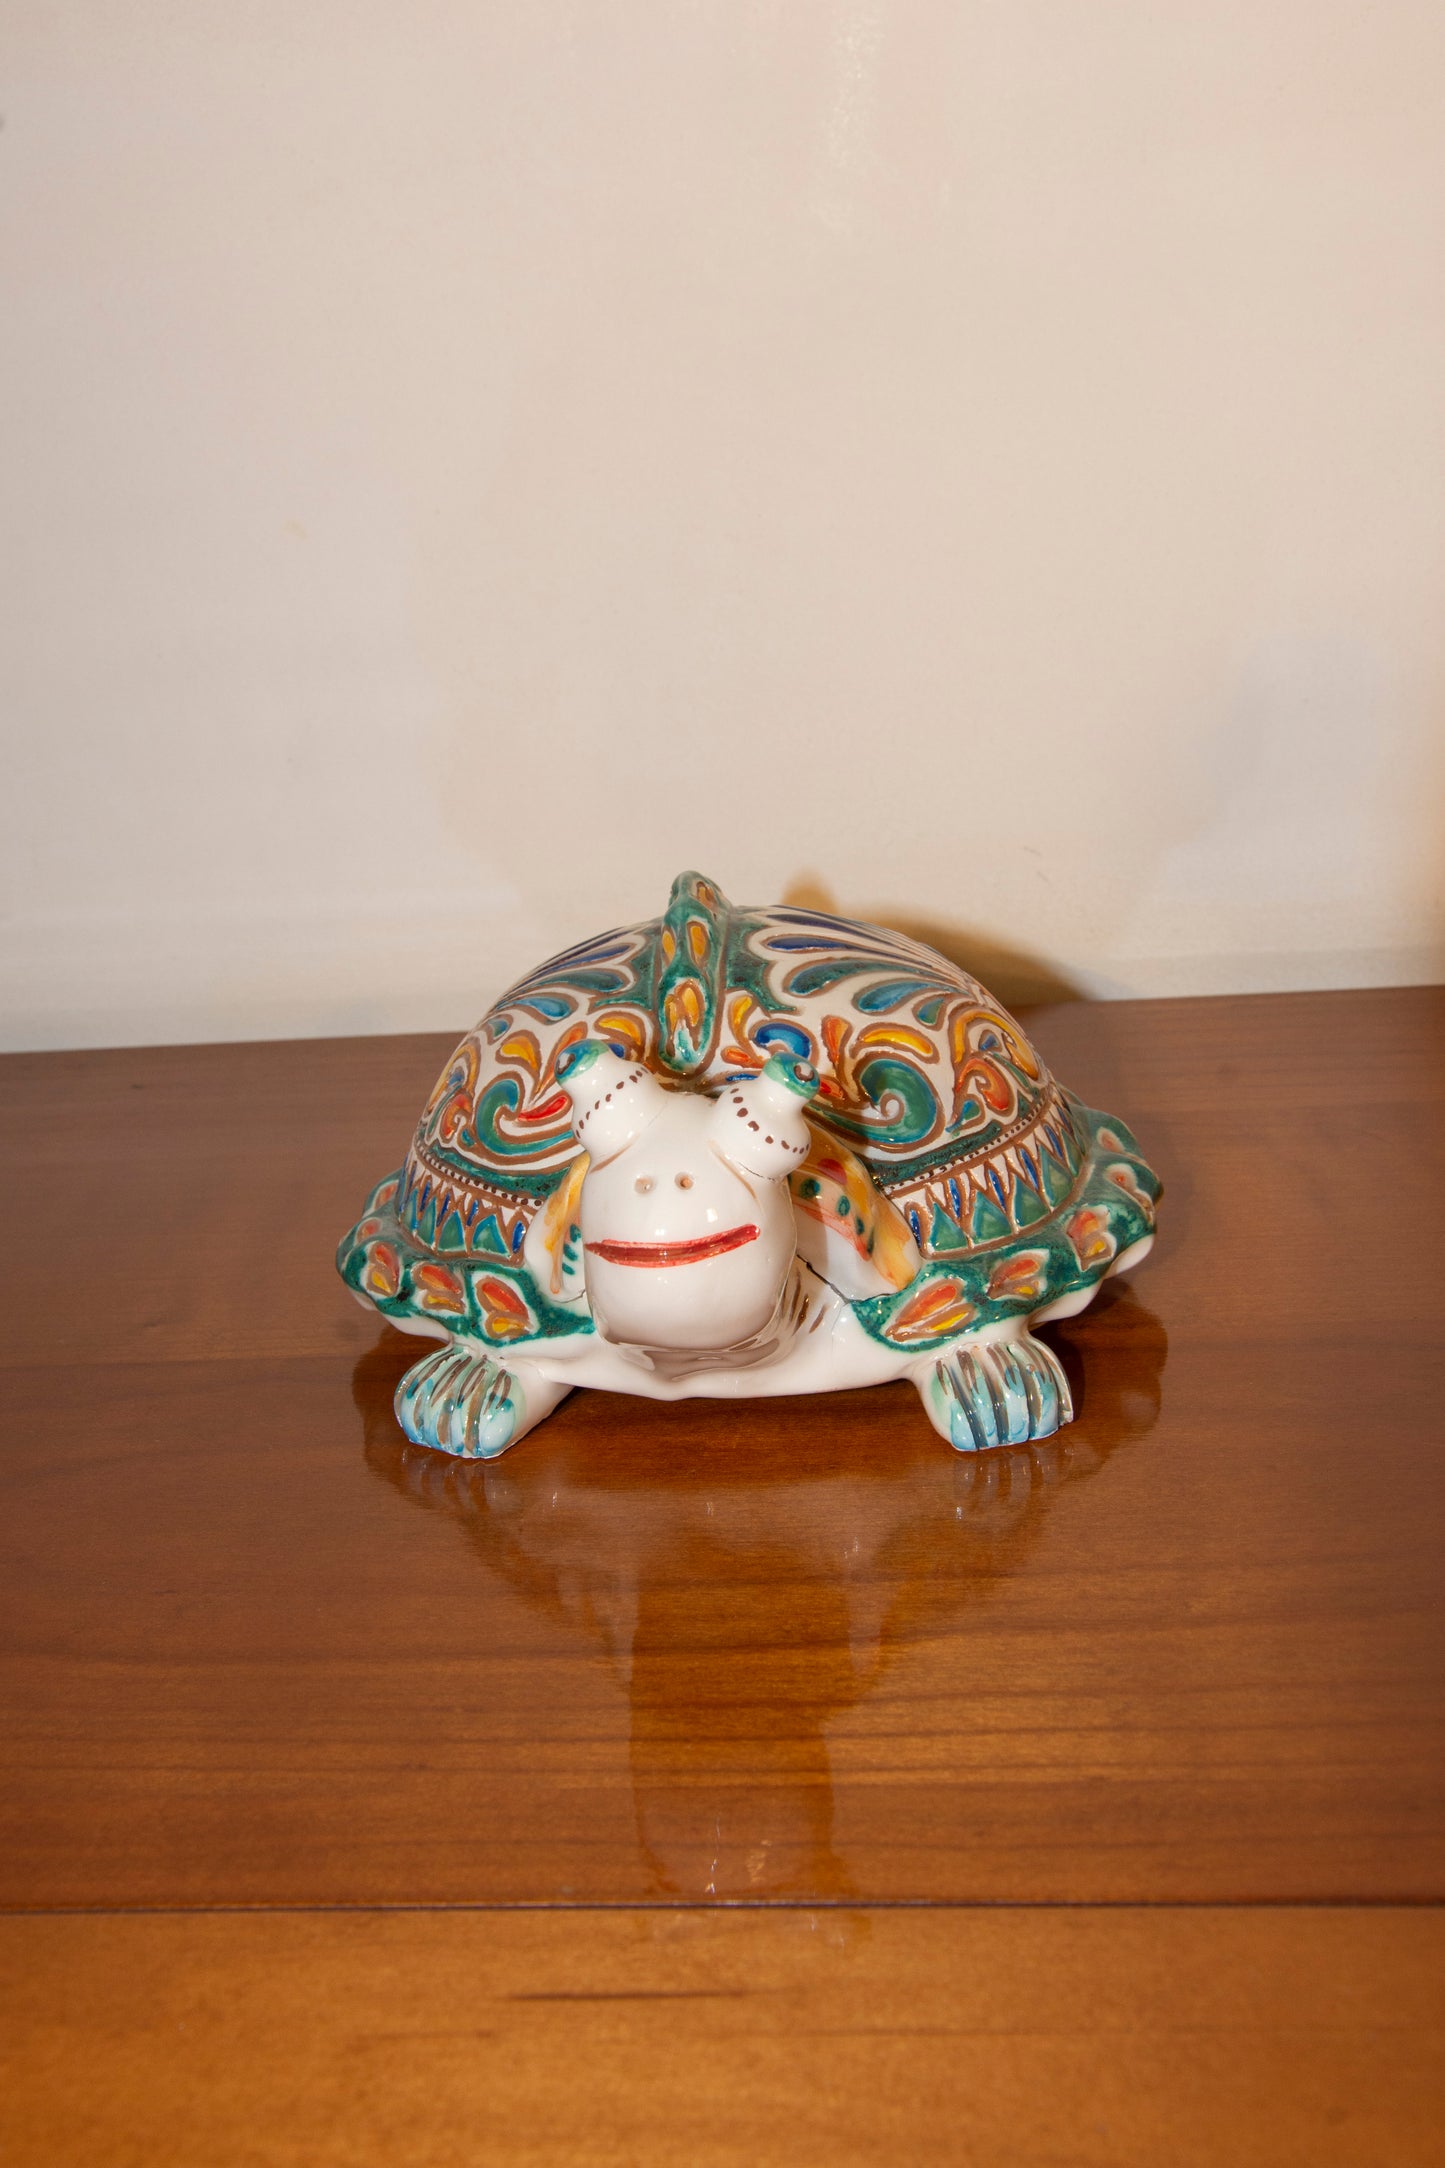 Unique piece ceramic turtle